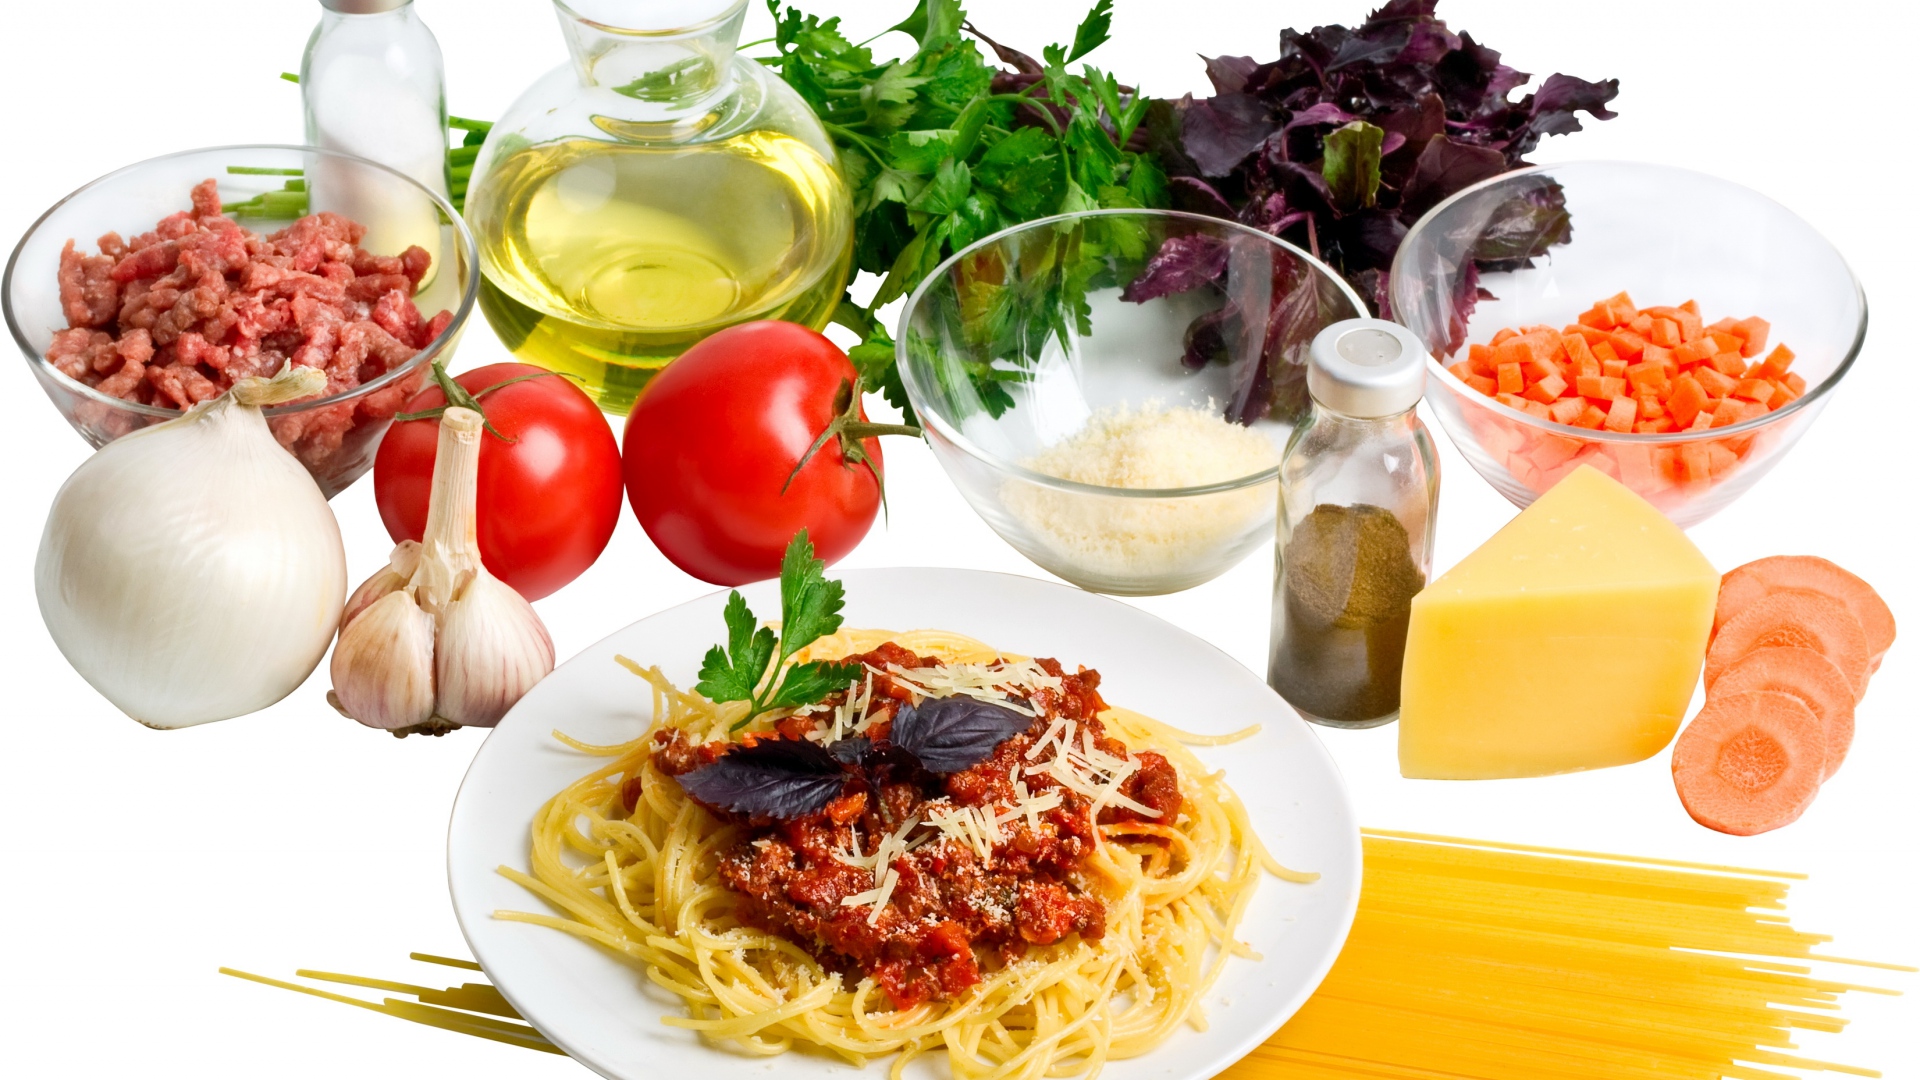 lebensmitteltapete hd 1080p,essen,gericht,capellini,italienisches essen